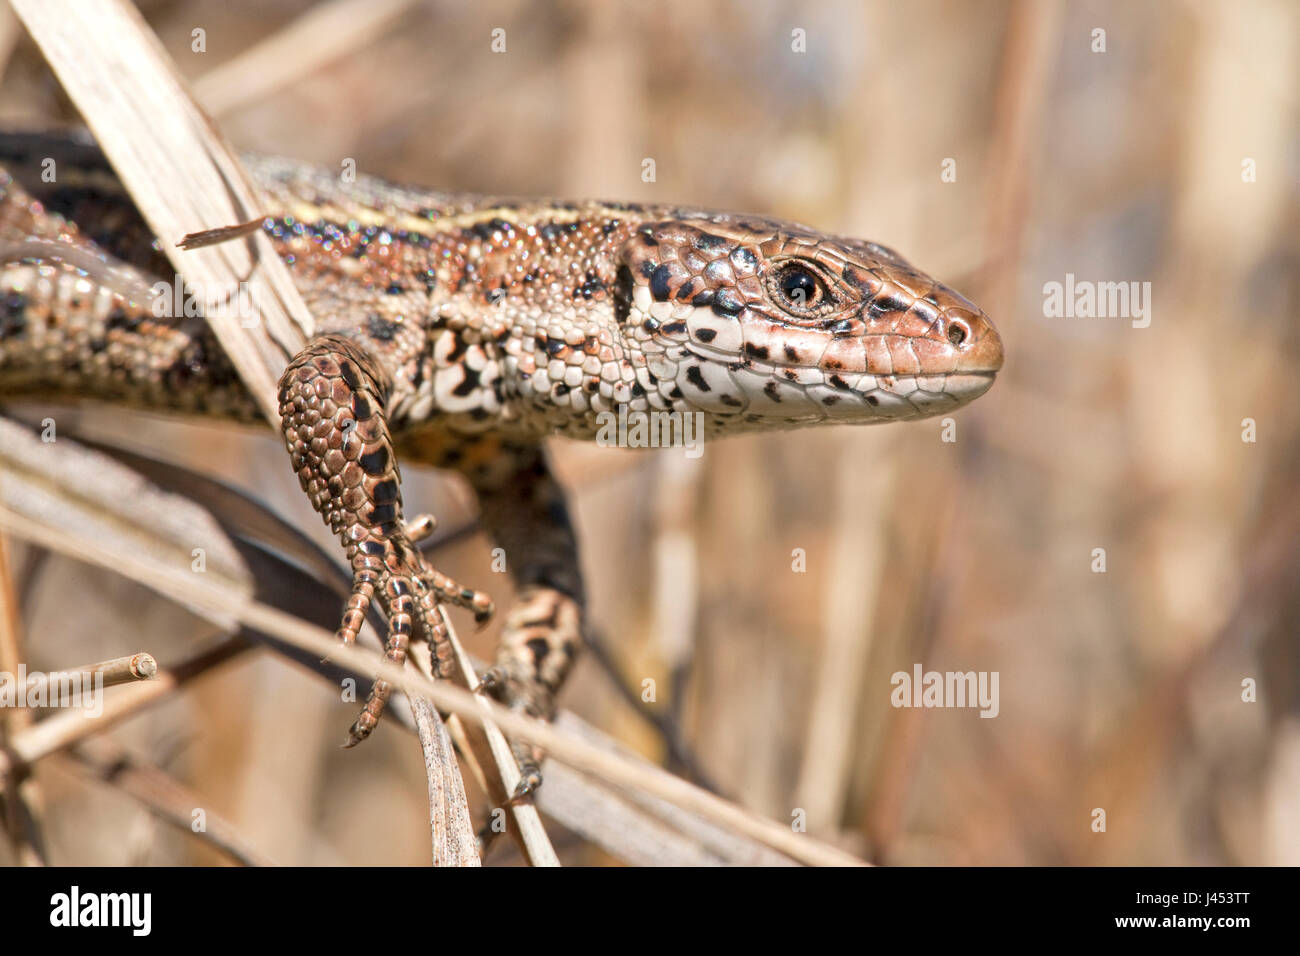 Foto van een levendbarende hagedis klauterend in een pol pijpenstrootje; fotografía de un lagarto común escalar en moorhexe; Foto de stock